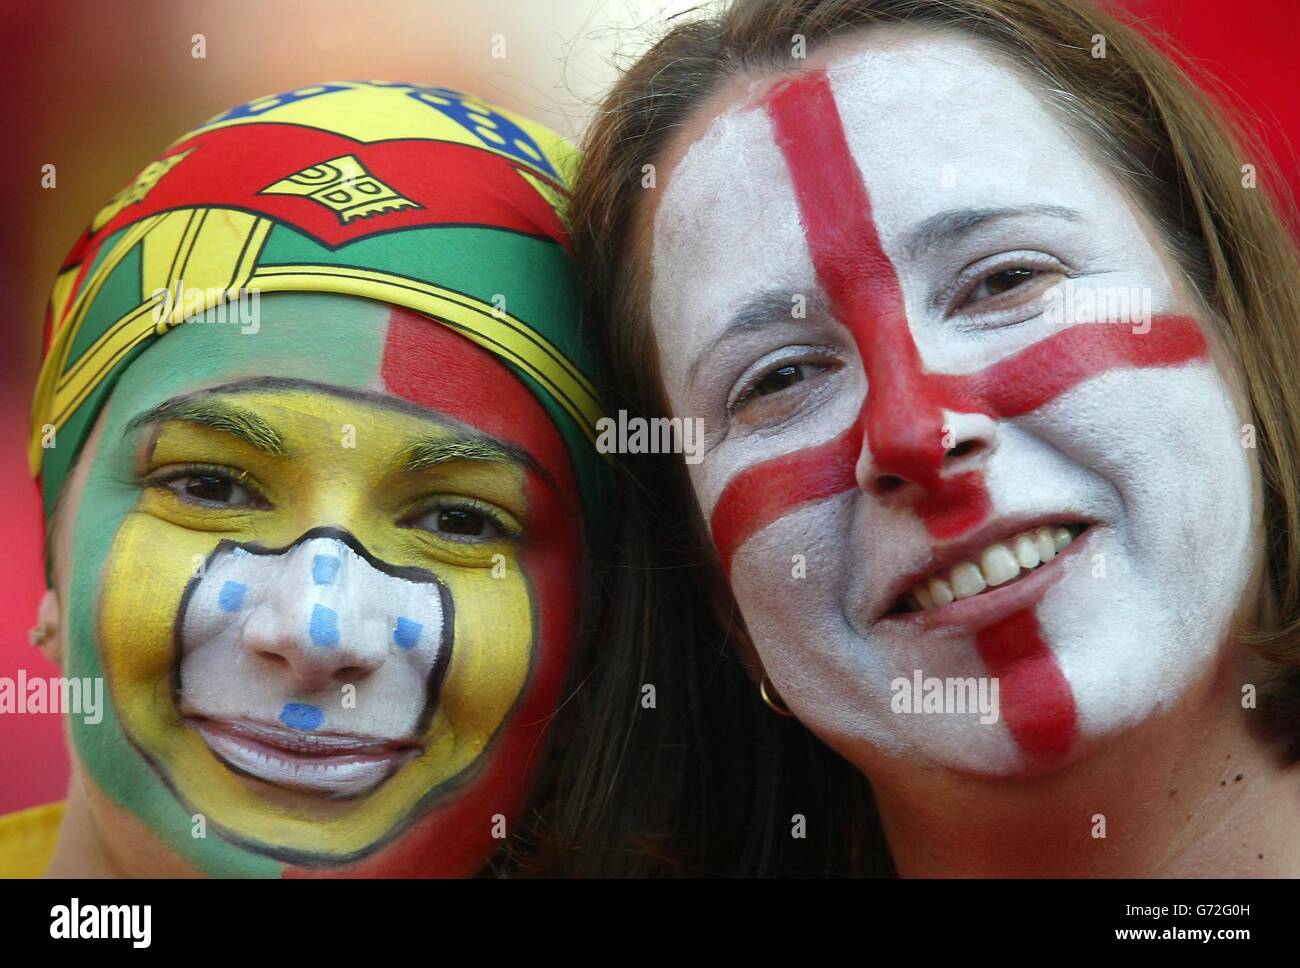 Un fan inglese e portoghese (a sinistra) all'Estadio da Luz di Lisbona, giovedì 24 2004 giugno, in vista dello scontro finale di Euro 2004 tra Inghilterra e Portogallo. Foto Stock